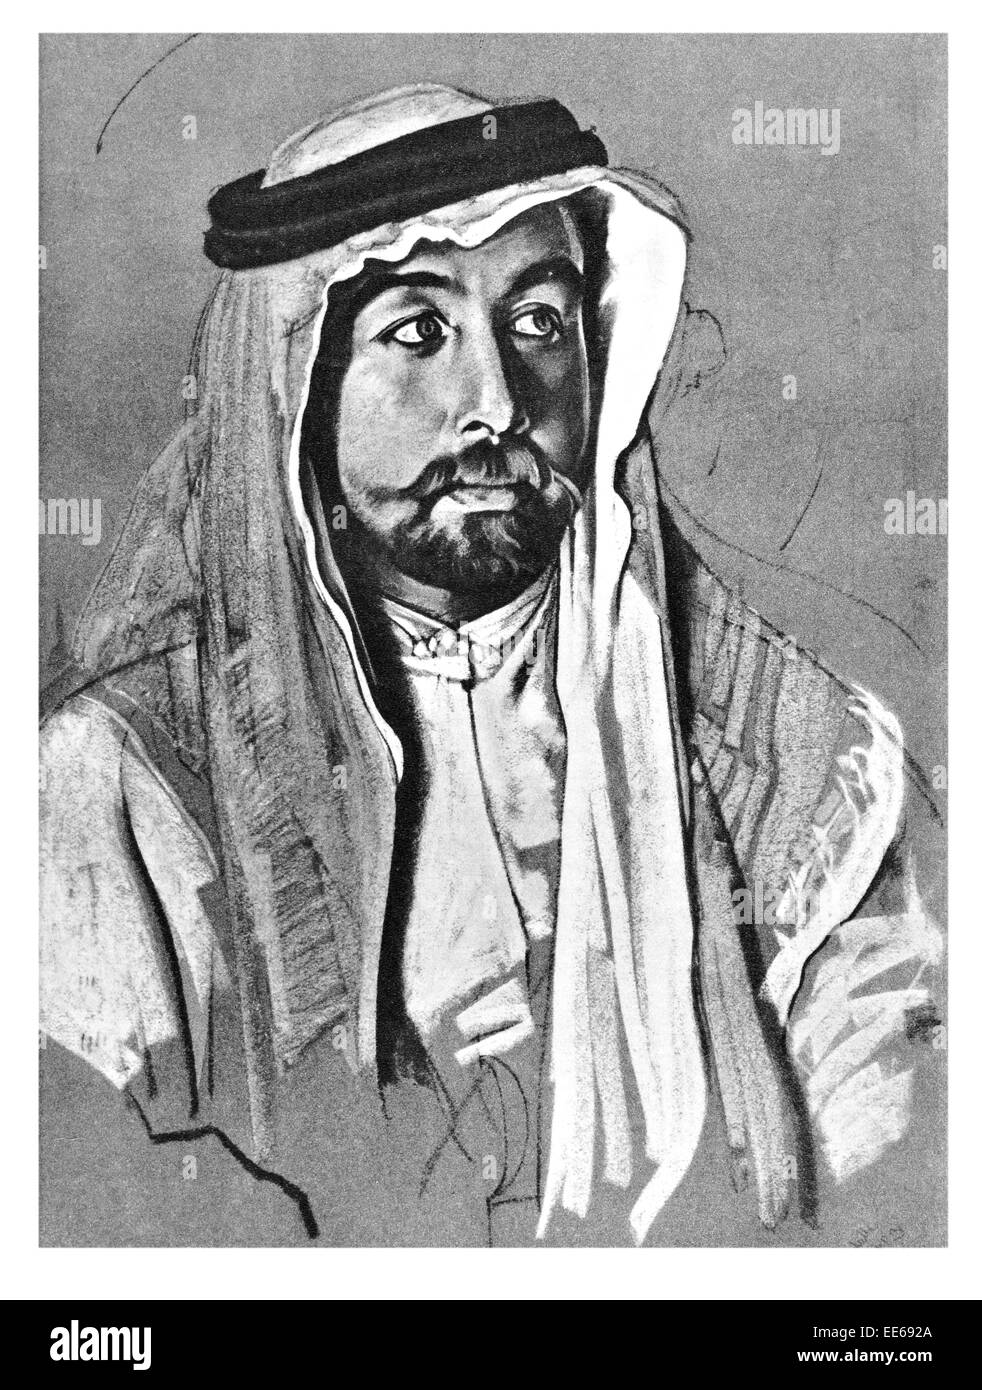 Ho Abdullah bin al-re Hussein di Giordania Febbraio 1882 20 Luglio 1951 British guerrilla Thomas Edward Lawrence d'Arabia Foto Stock